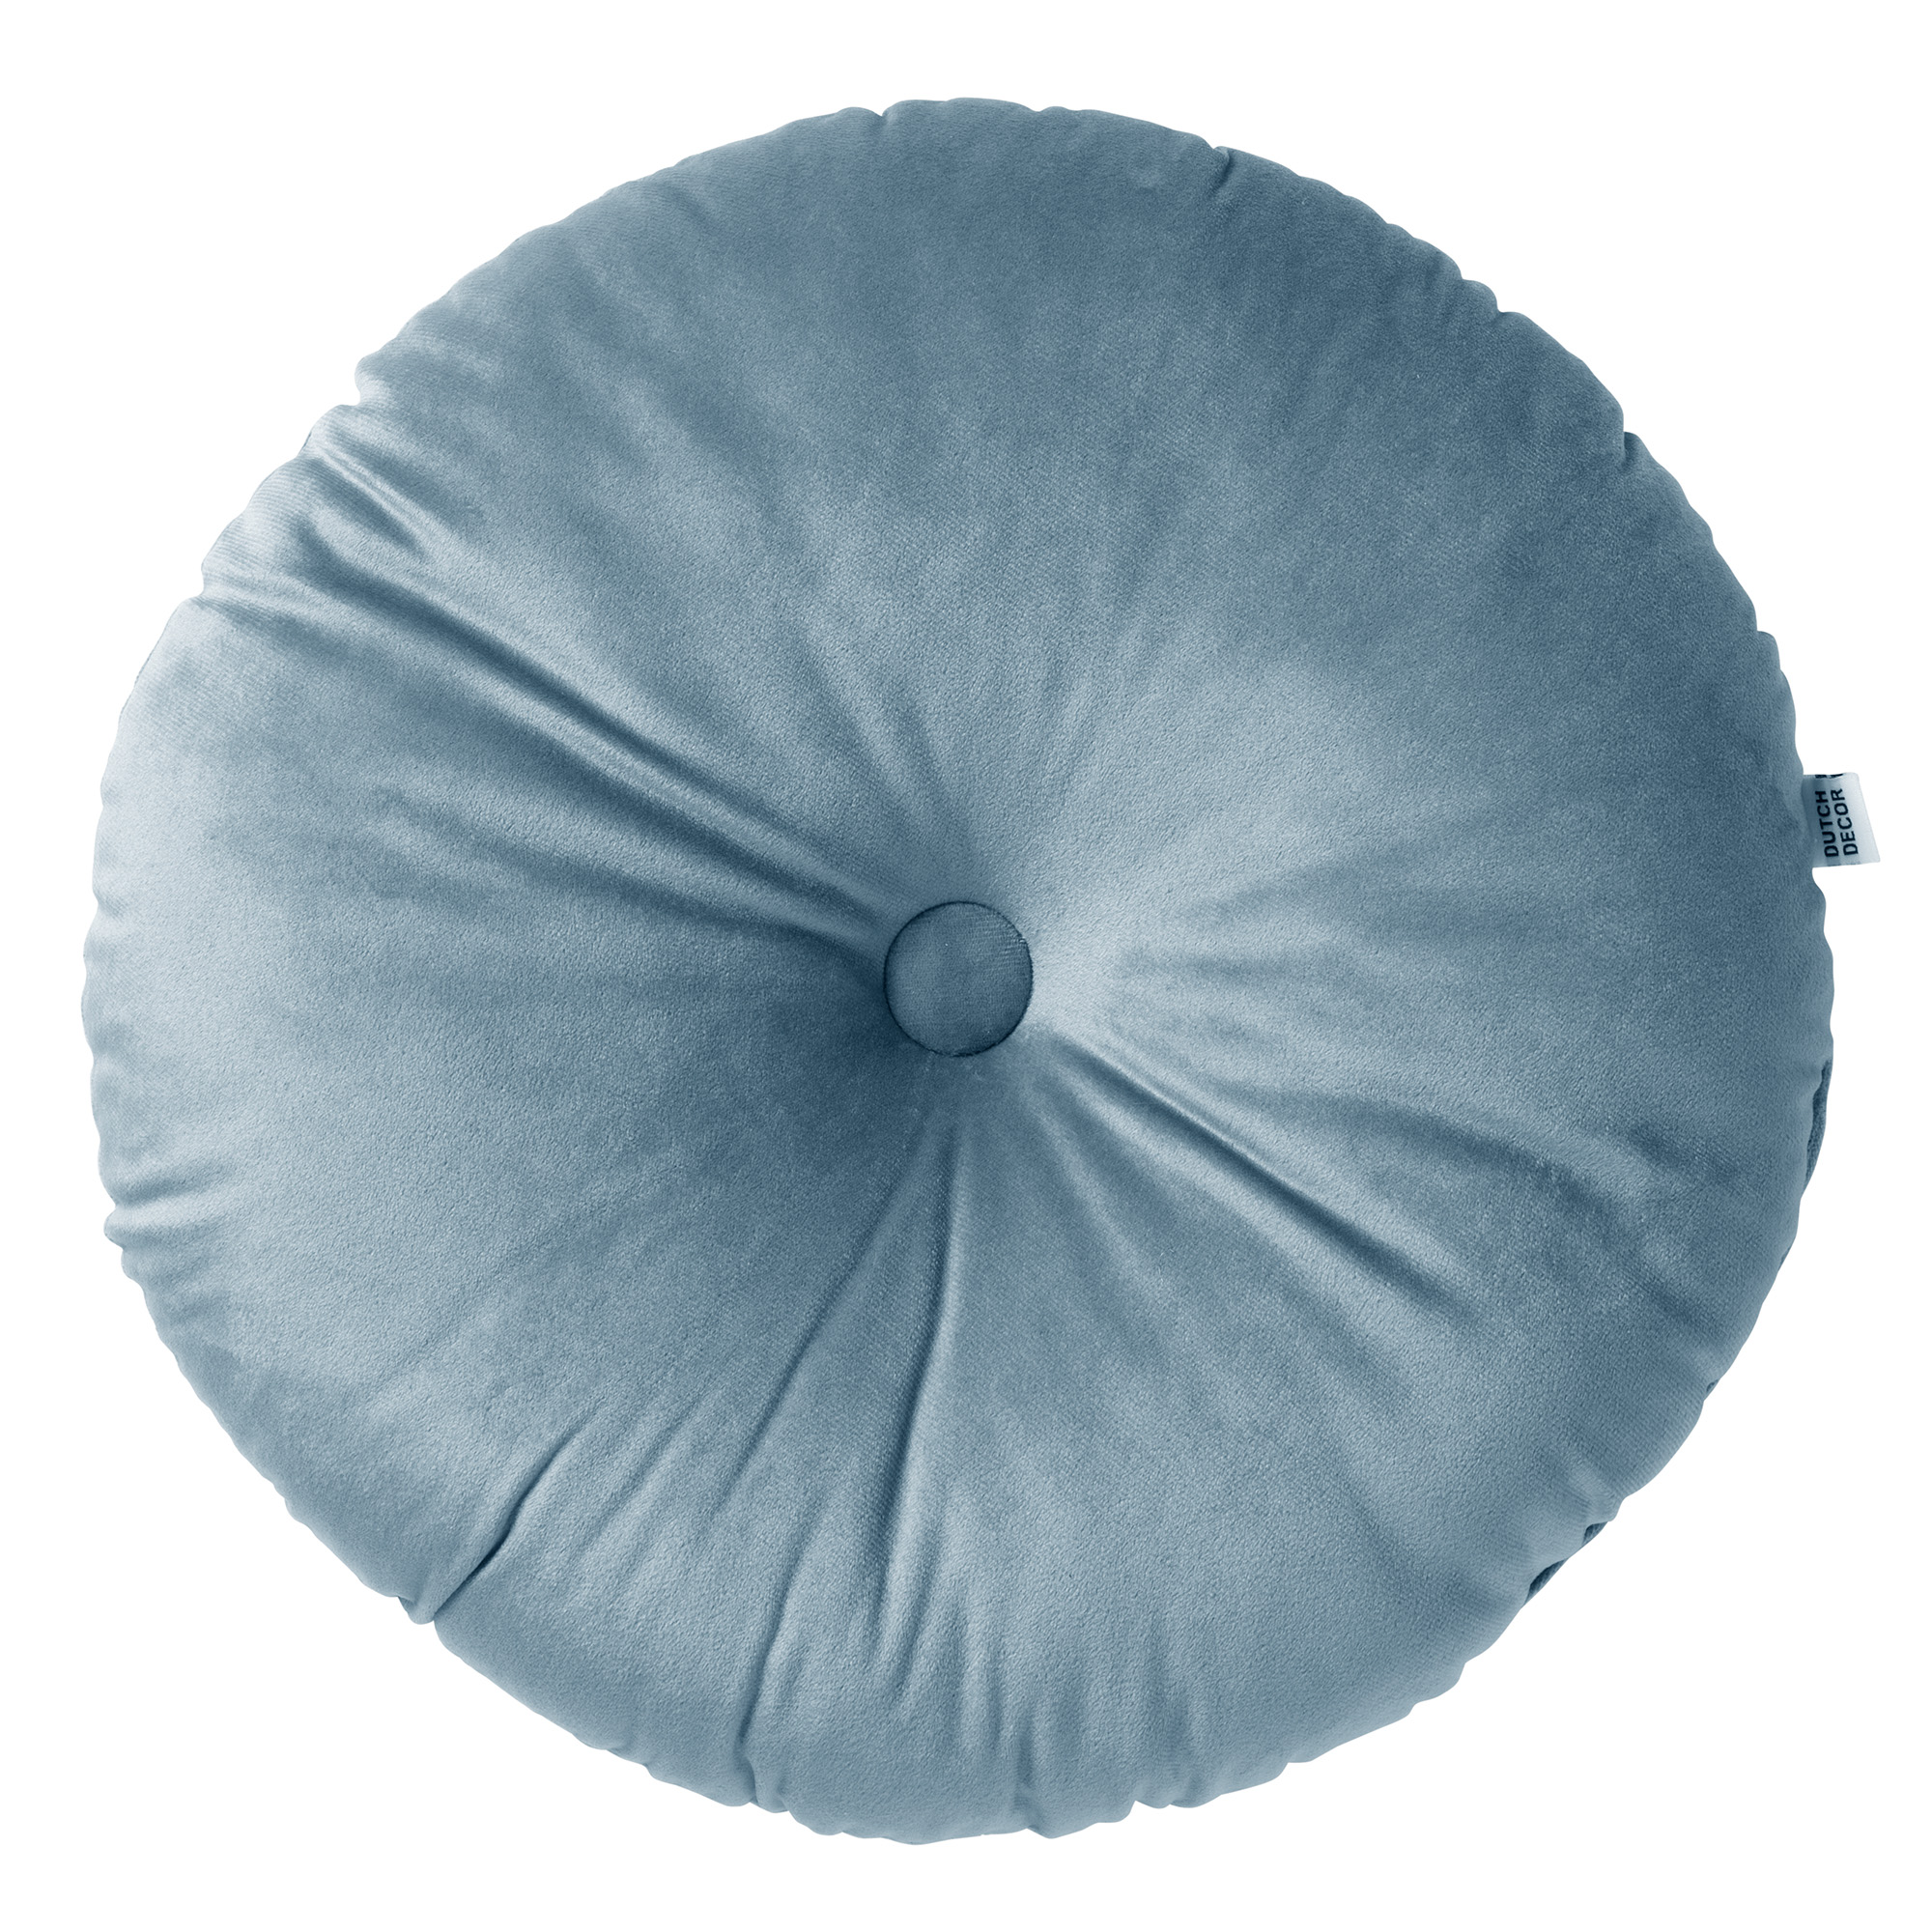 OLLY - Sierkussen rond velvet Provincial Blue 40 cm